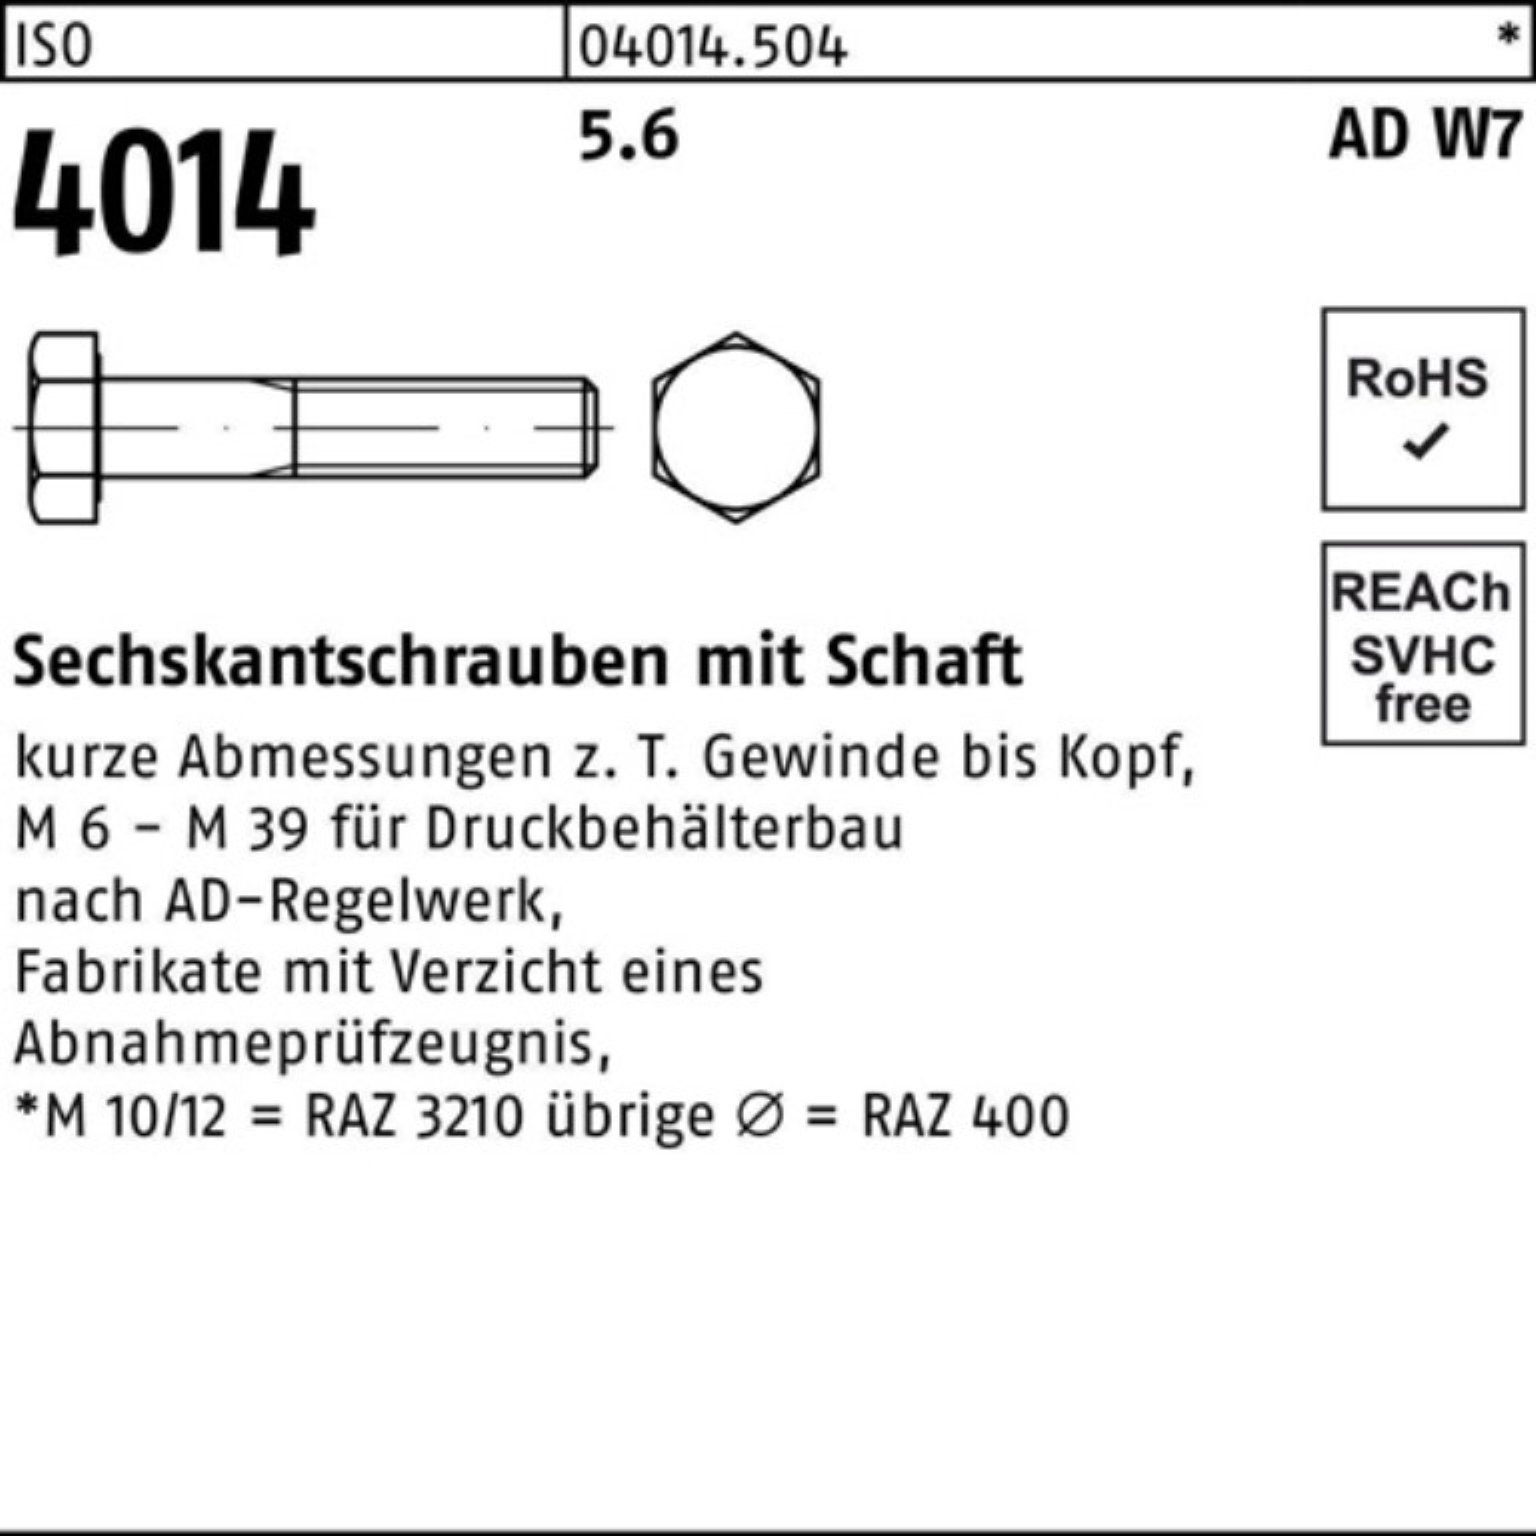 Schaft 200 50 Sechskantschraube Pack 4014 Sechskantschraube 200er 5.6 ISO M6x W7 Bufab Stück